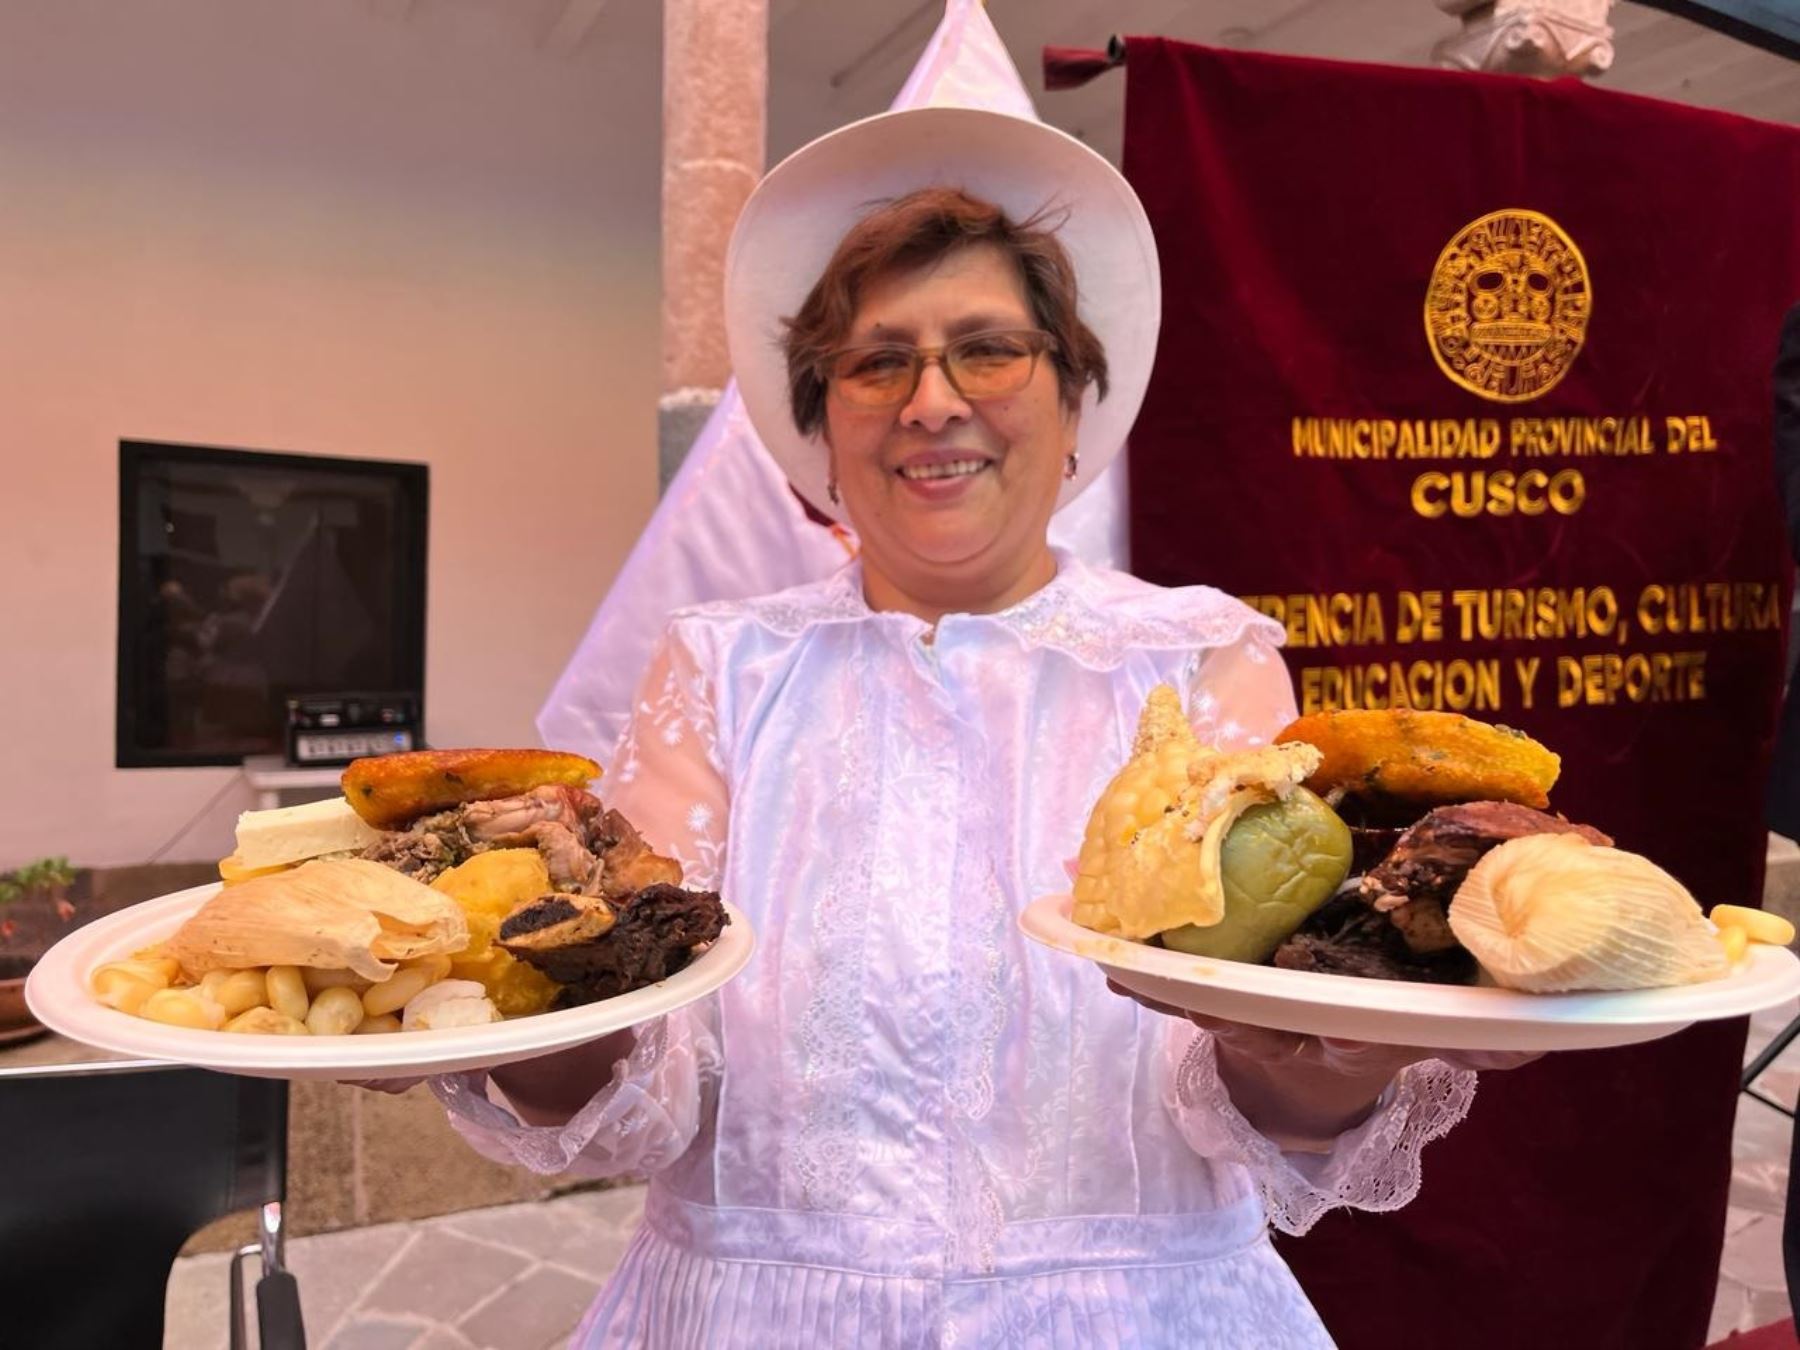 Picanterías de Cusco ofrecerán los mejores platos típicos de la ciudad imperial en festival gastronómico "La Gran Picanteada", que se celebrará este sábado 9 y domingo 10 de marzo en la plaza San Francisco. ANDINA/Percy Hurtado Santillán